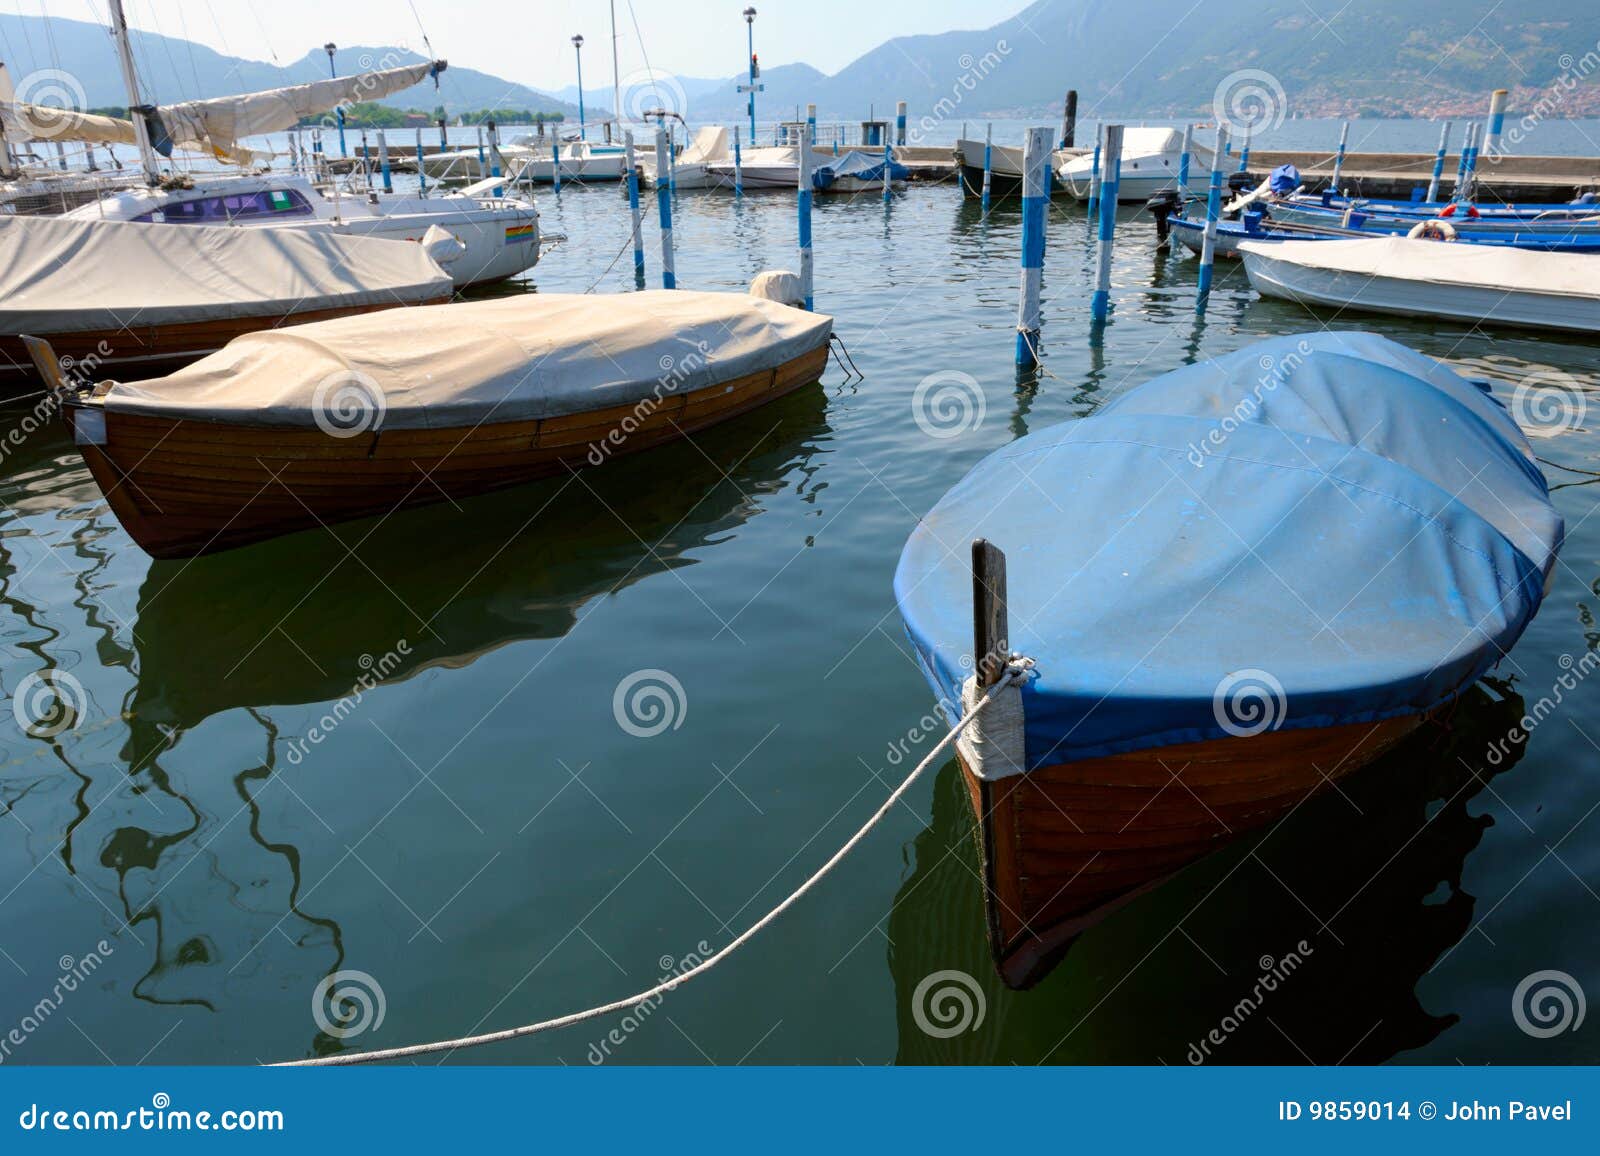 boats in marina at iseo, lombardy, italy